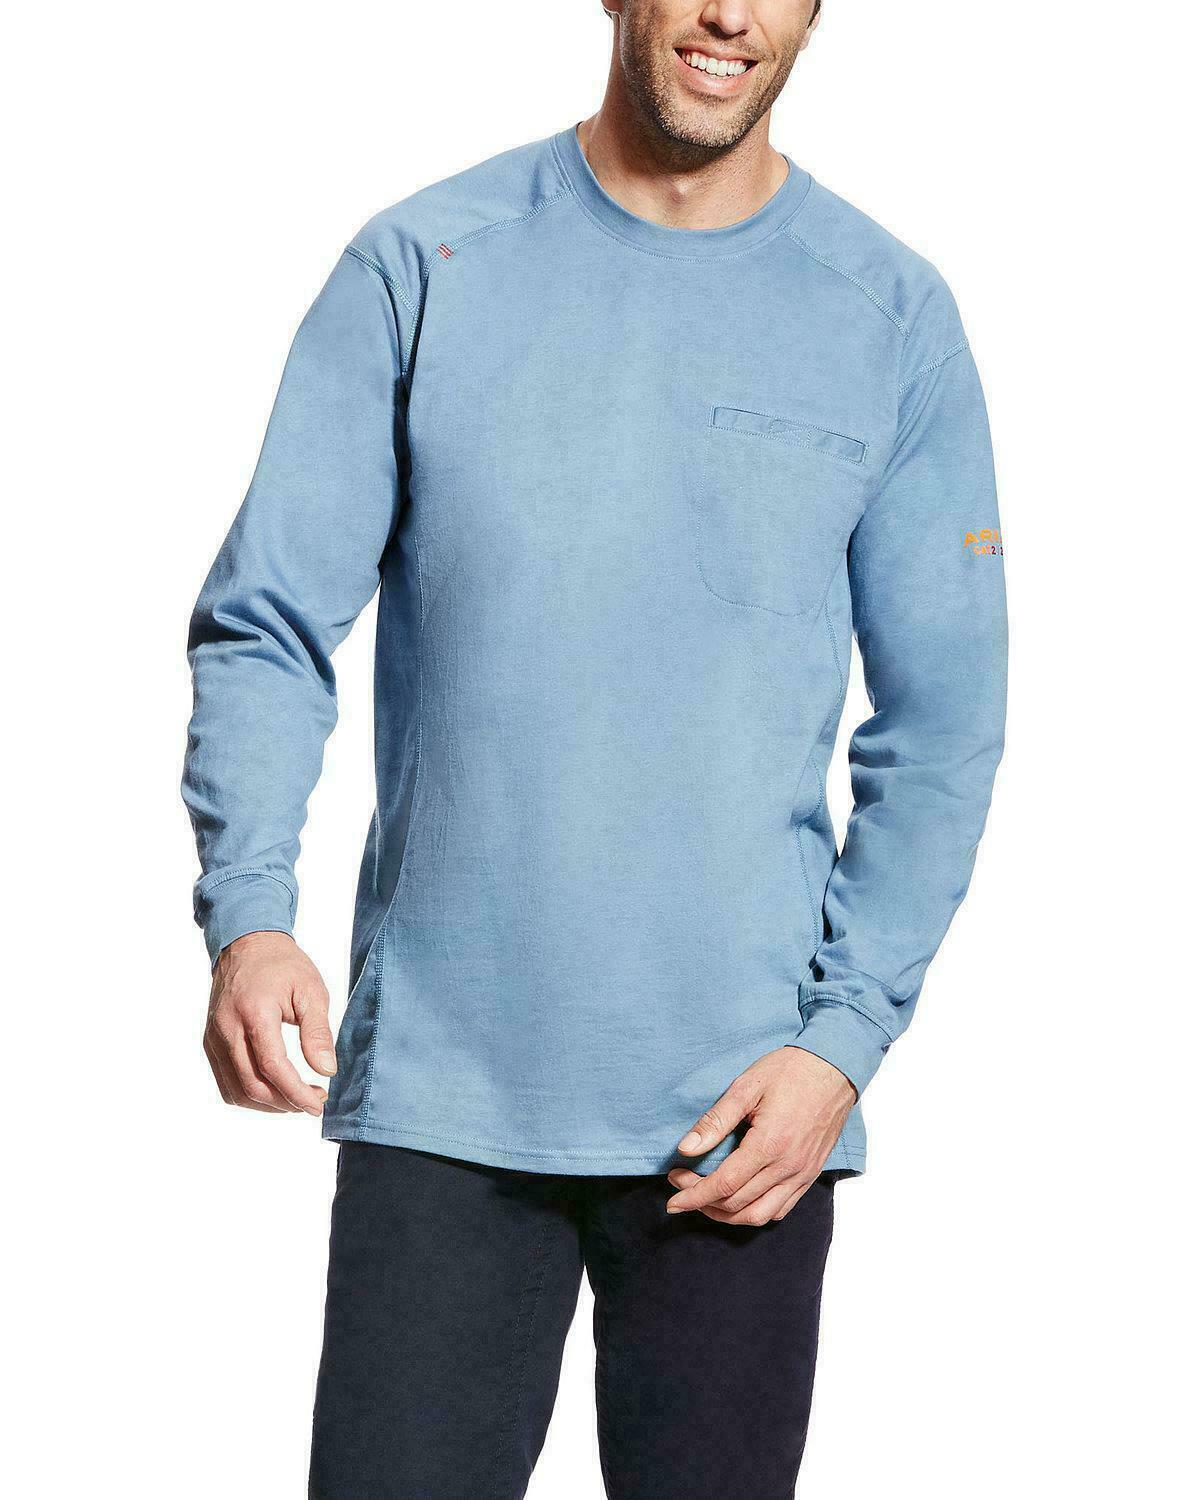 Ariat Men's FR Air Crew Steel Blue Long Sleeve Shirt